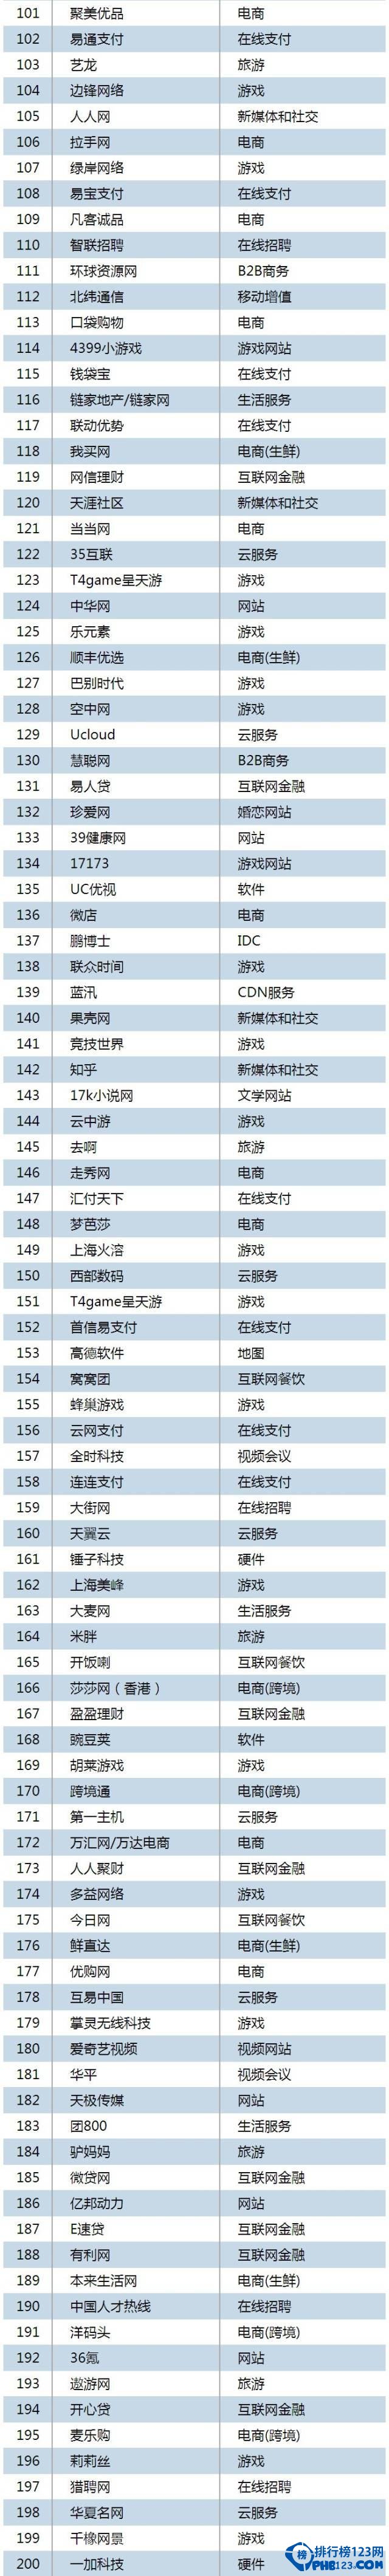 中國網際網路公司500強排名2015